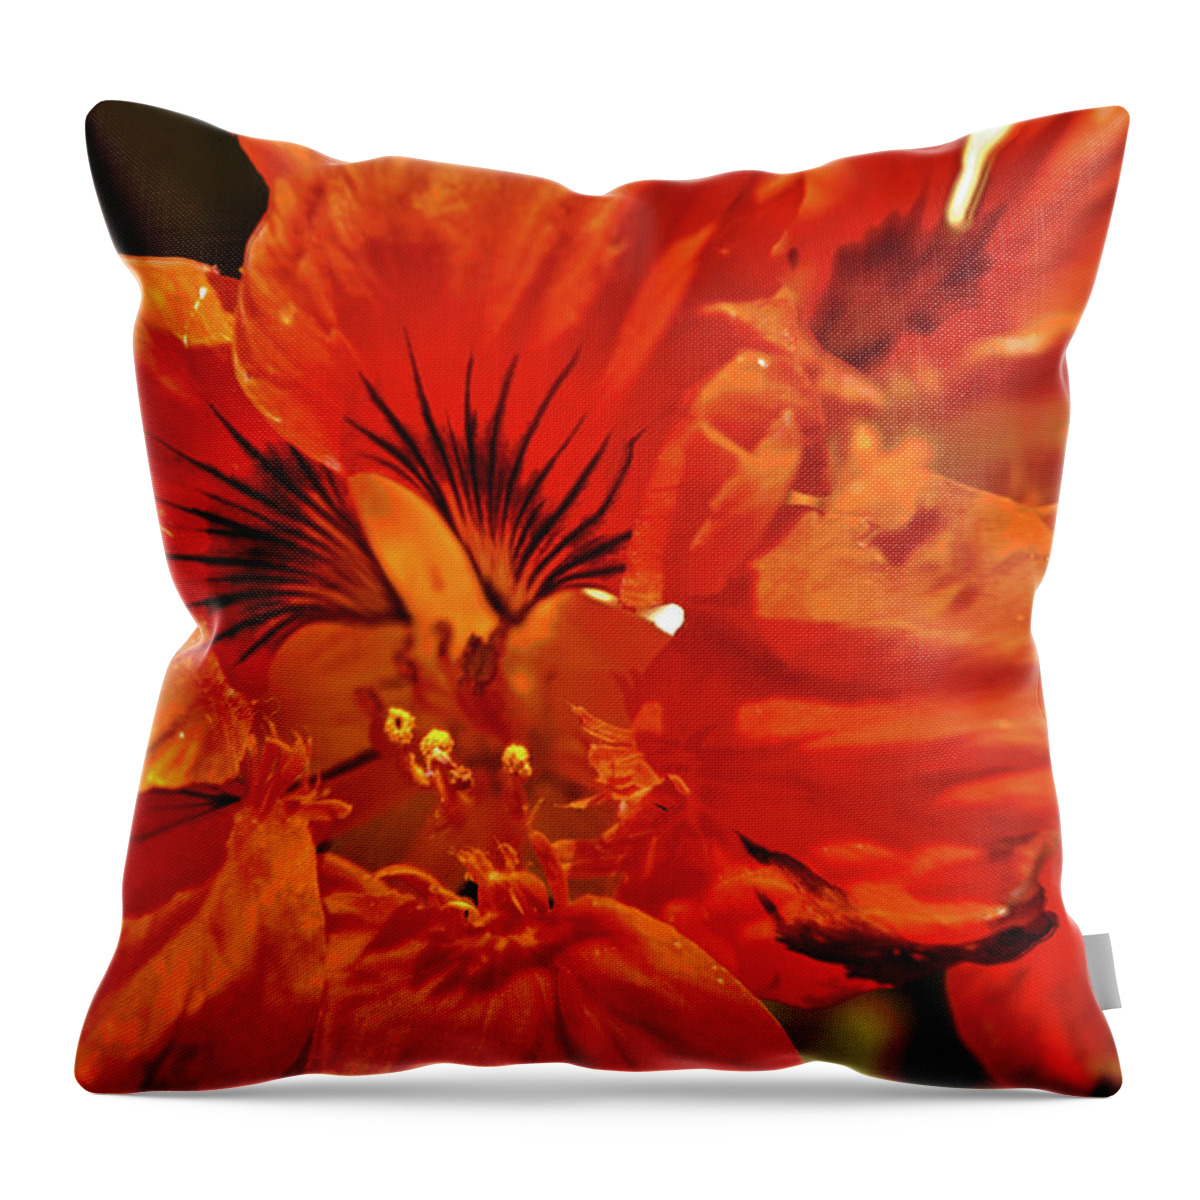 Flower Throw Pillow featuring the photograph Orange by Paul Beckelheimer